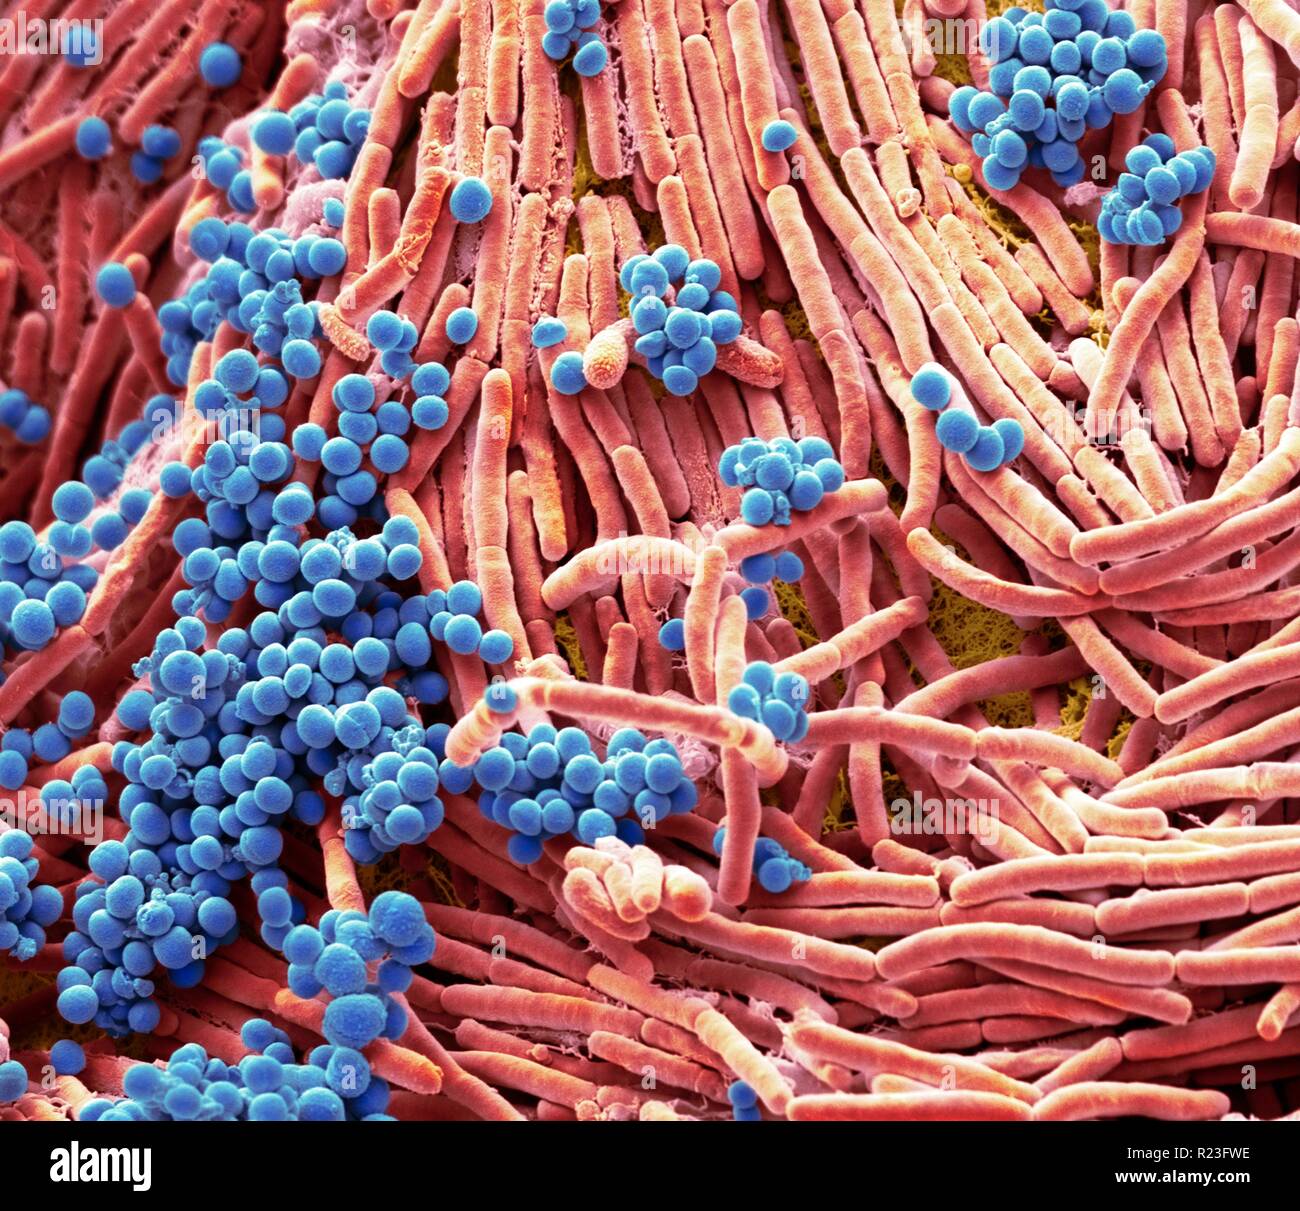 Farbige Scanning Electron Micrograph (SEM) von Bakterien gezüchtet von einem Mobiltelefon. Tests haben gezeigt, dass die durchschnittliche Hörer trägt 18 Mal mehr Po Stockfoto